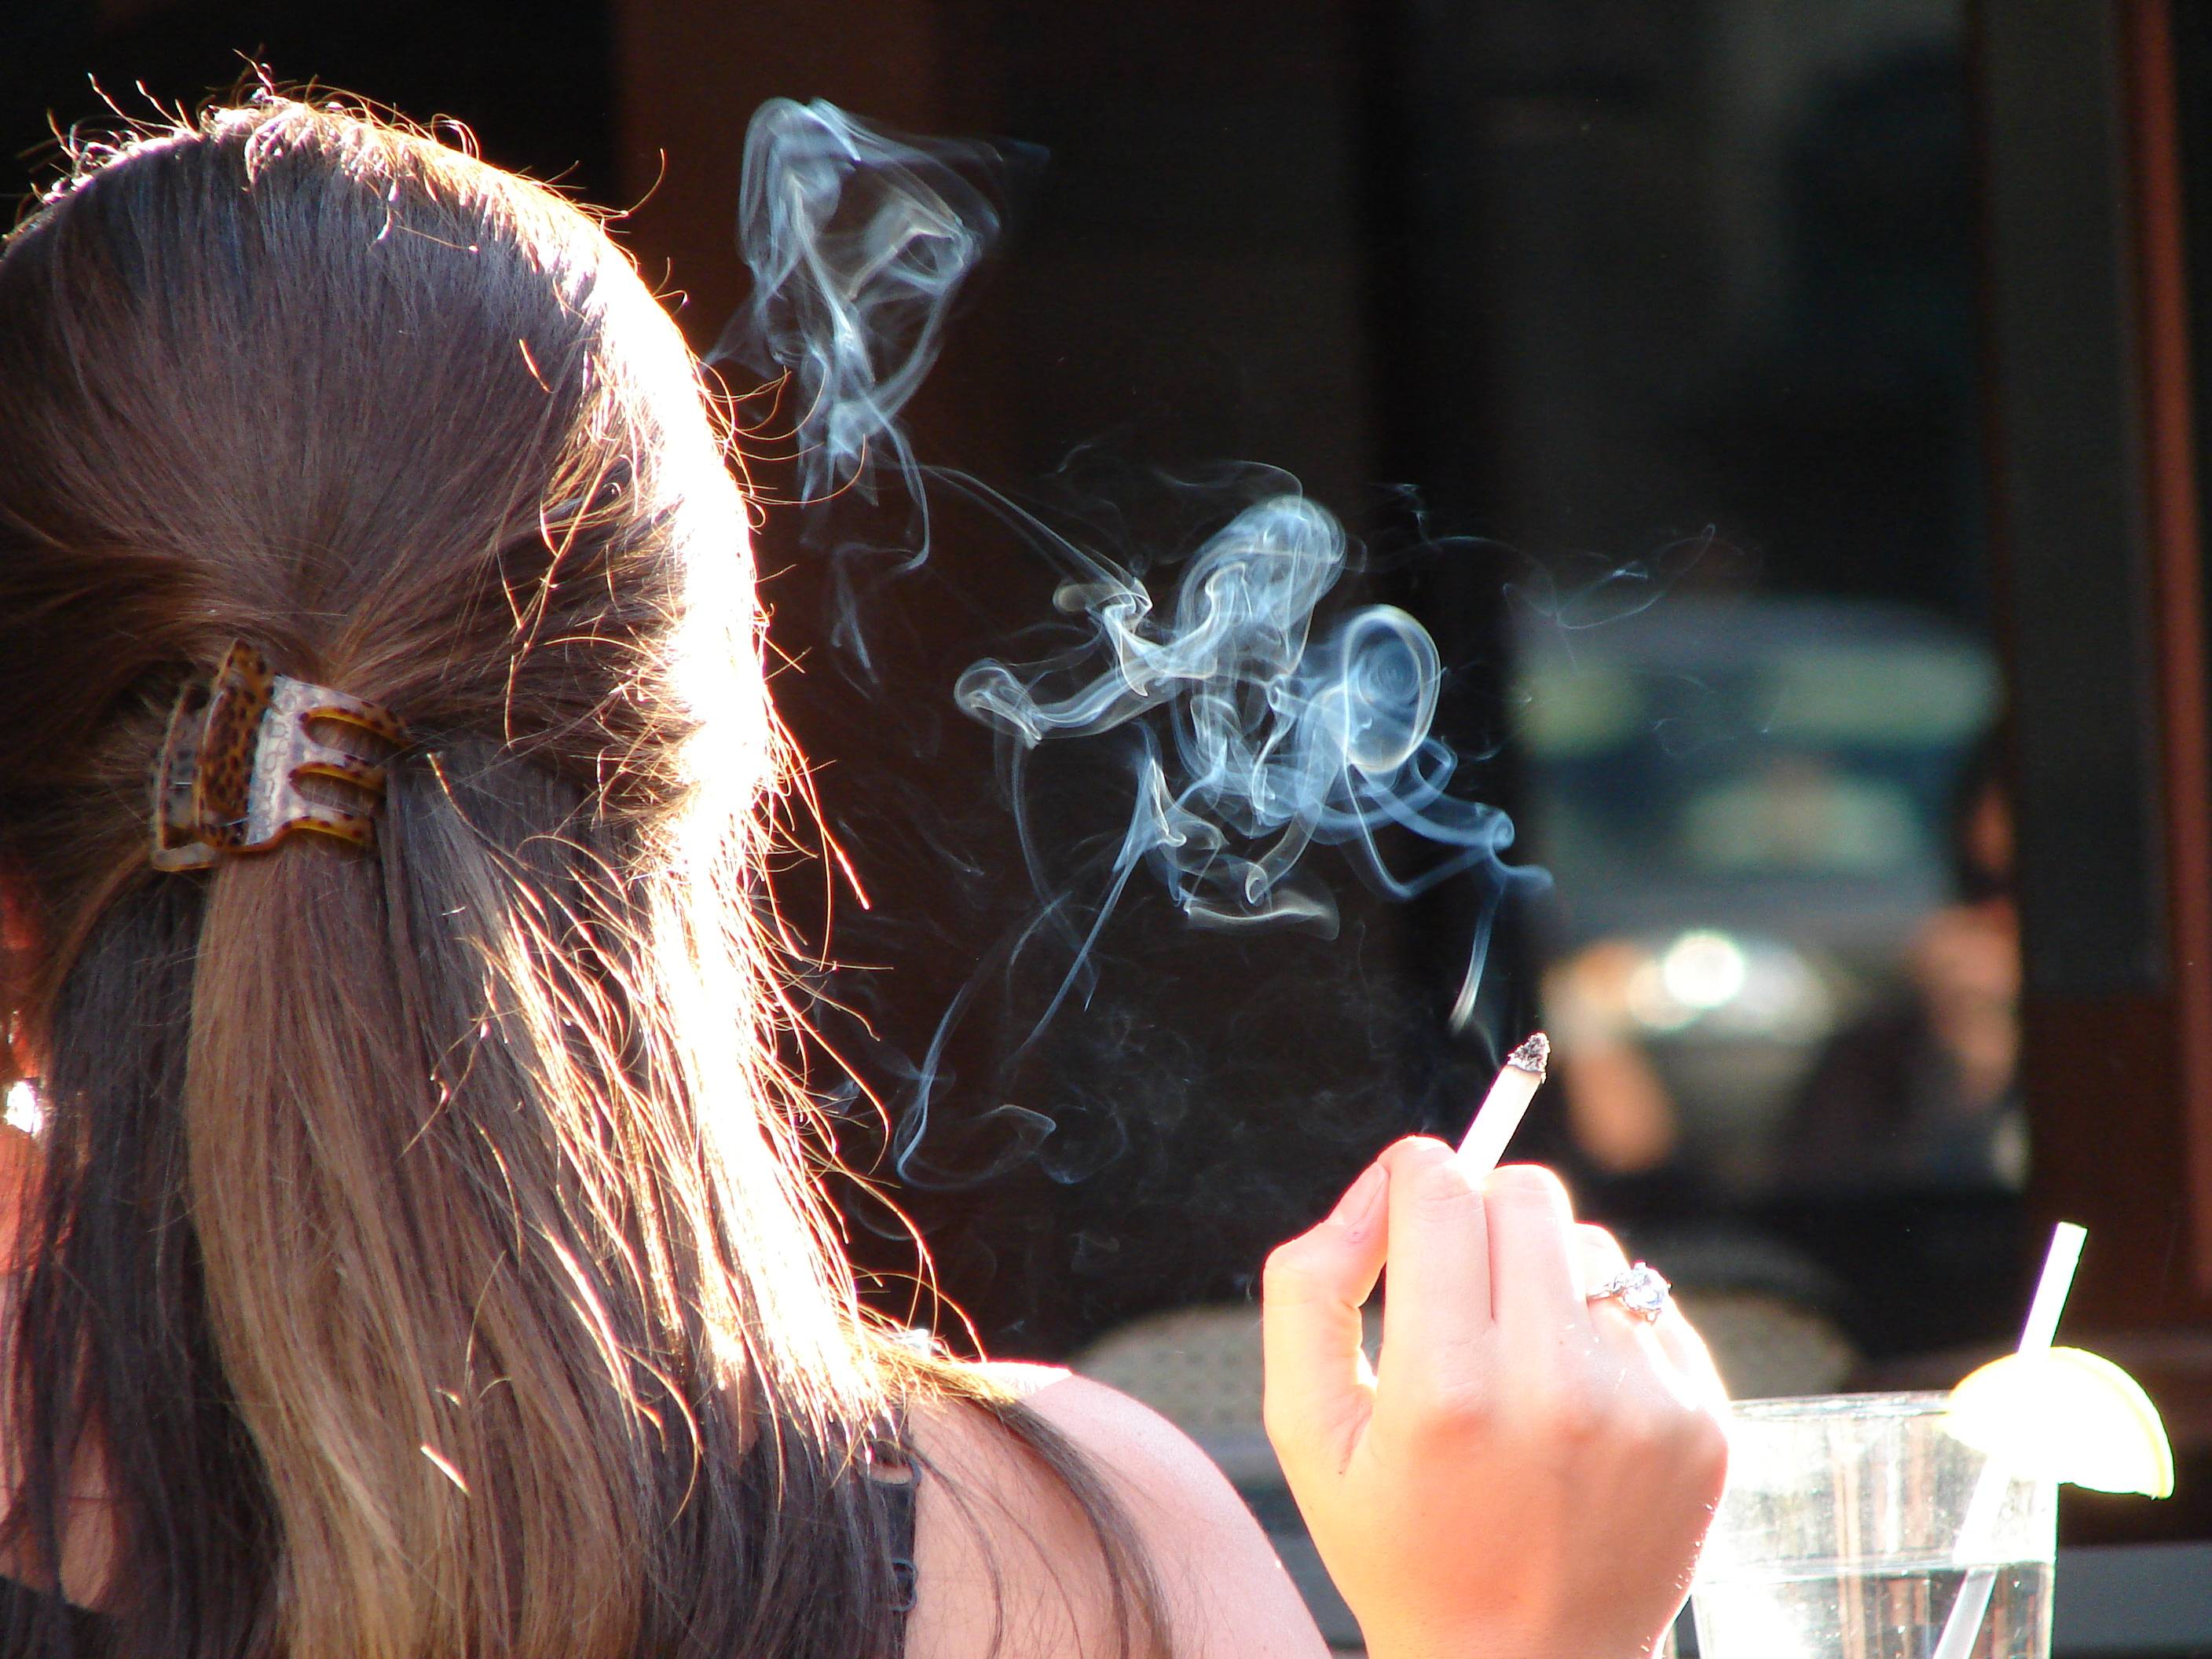   Sẽ là sai lầm nếu như phụ nữ tuổi 30 thường xuyên hút thuốc lá  